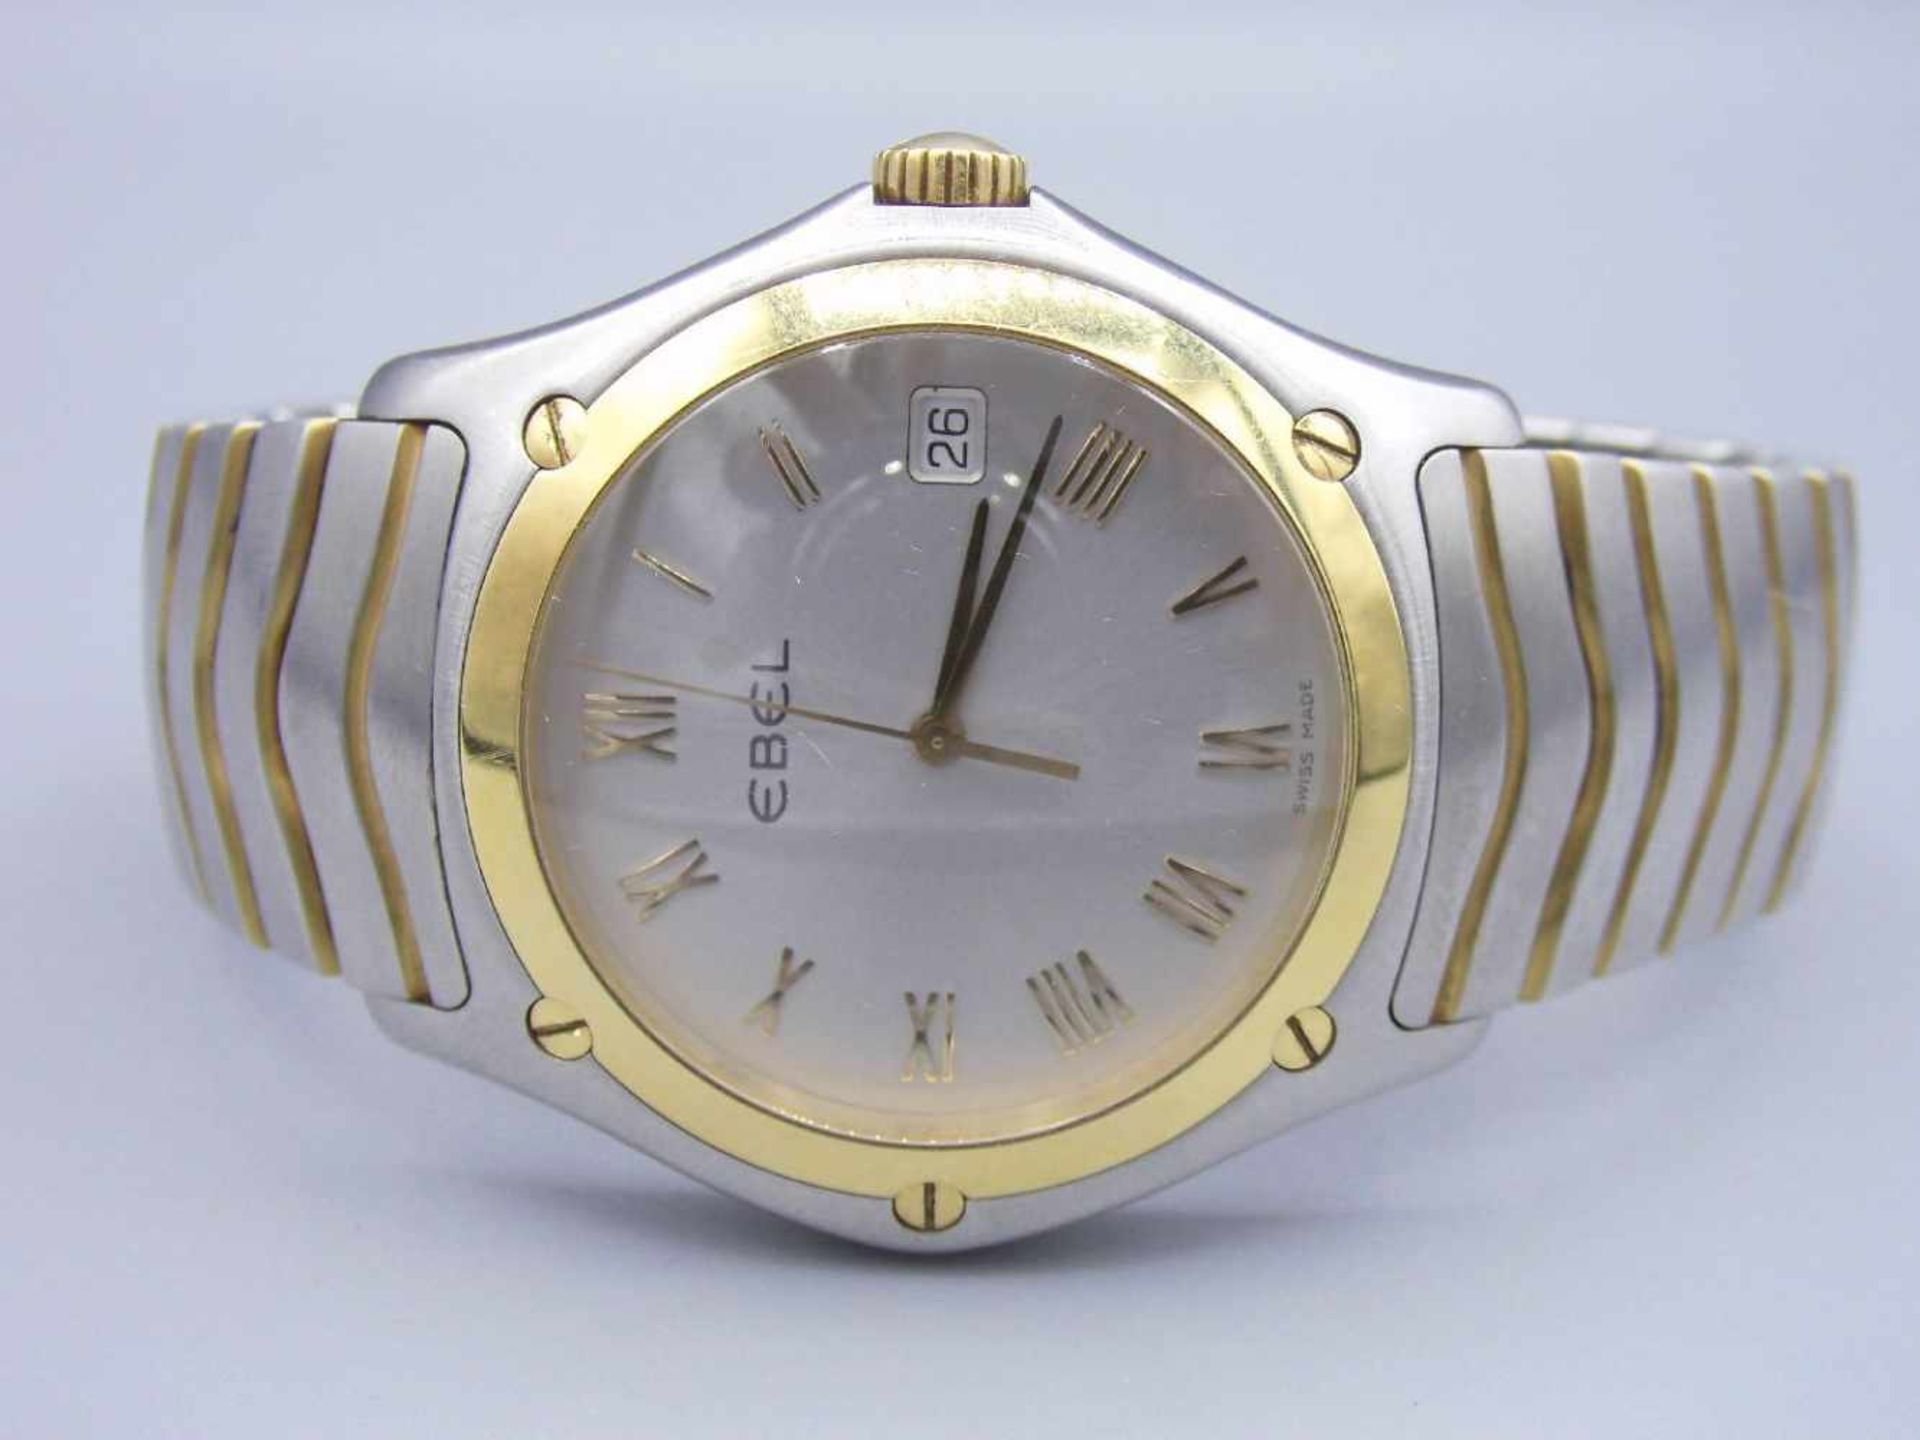 ARMBANDUHR EBEL "WAVE" / wristwatch, Armbanduhr in Stahl/Gold (750er Gold), Schweiz 2006, Quartz, - Bild 2 aus 7